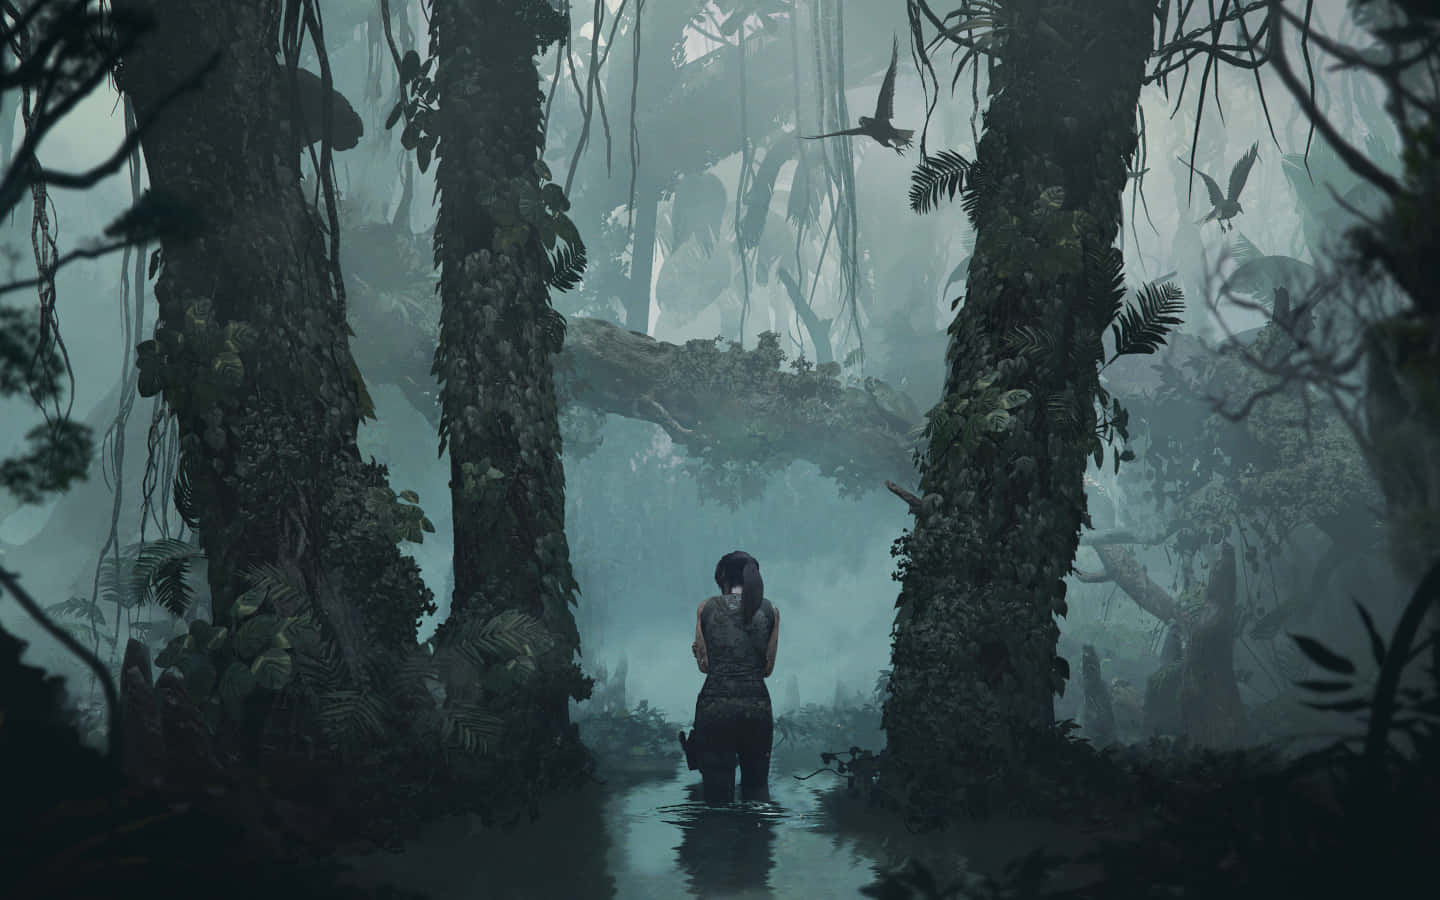 Preparala Tua Avventura: Esplora La Mistica Tomba Di Shadow Of The Tomb Raider.